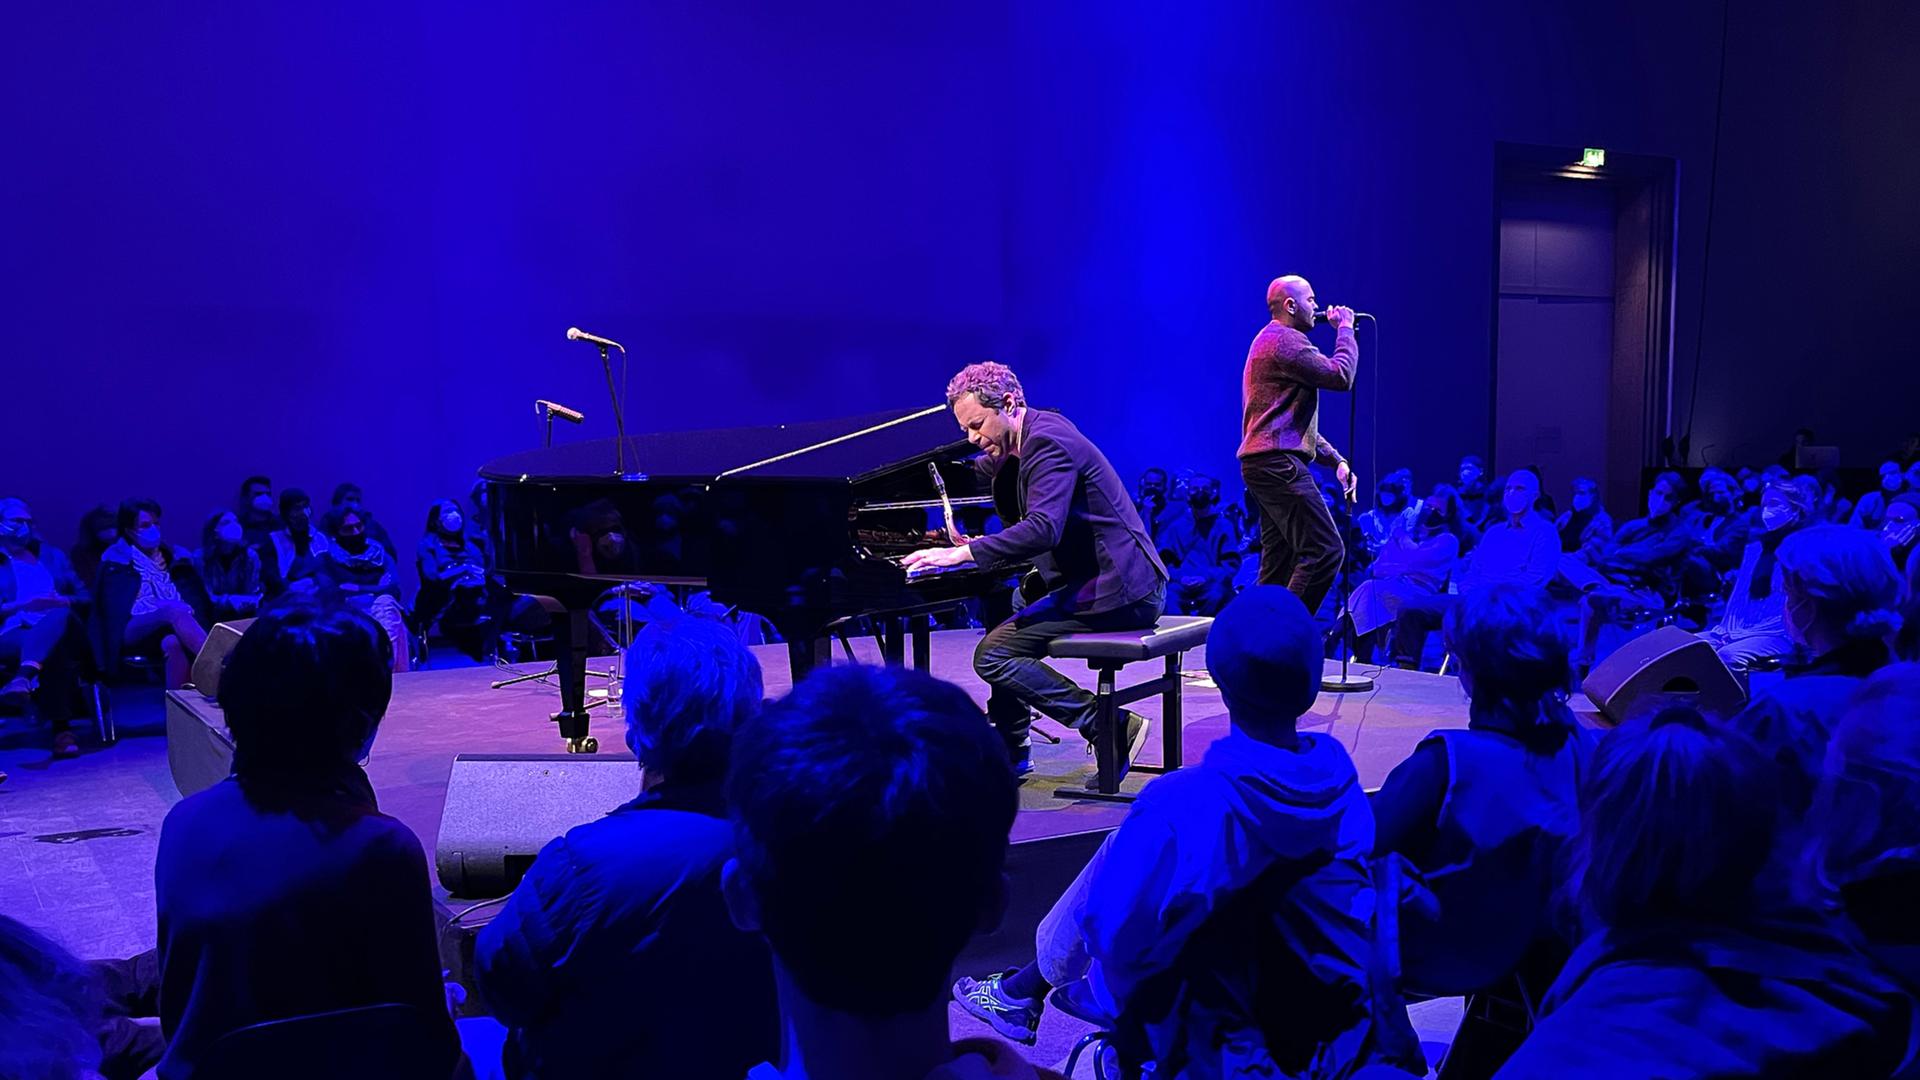 Musiker und Publikum sind auf einer Bühne in blaues Licht getaucht